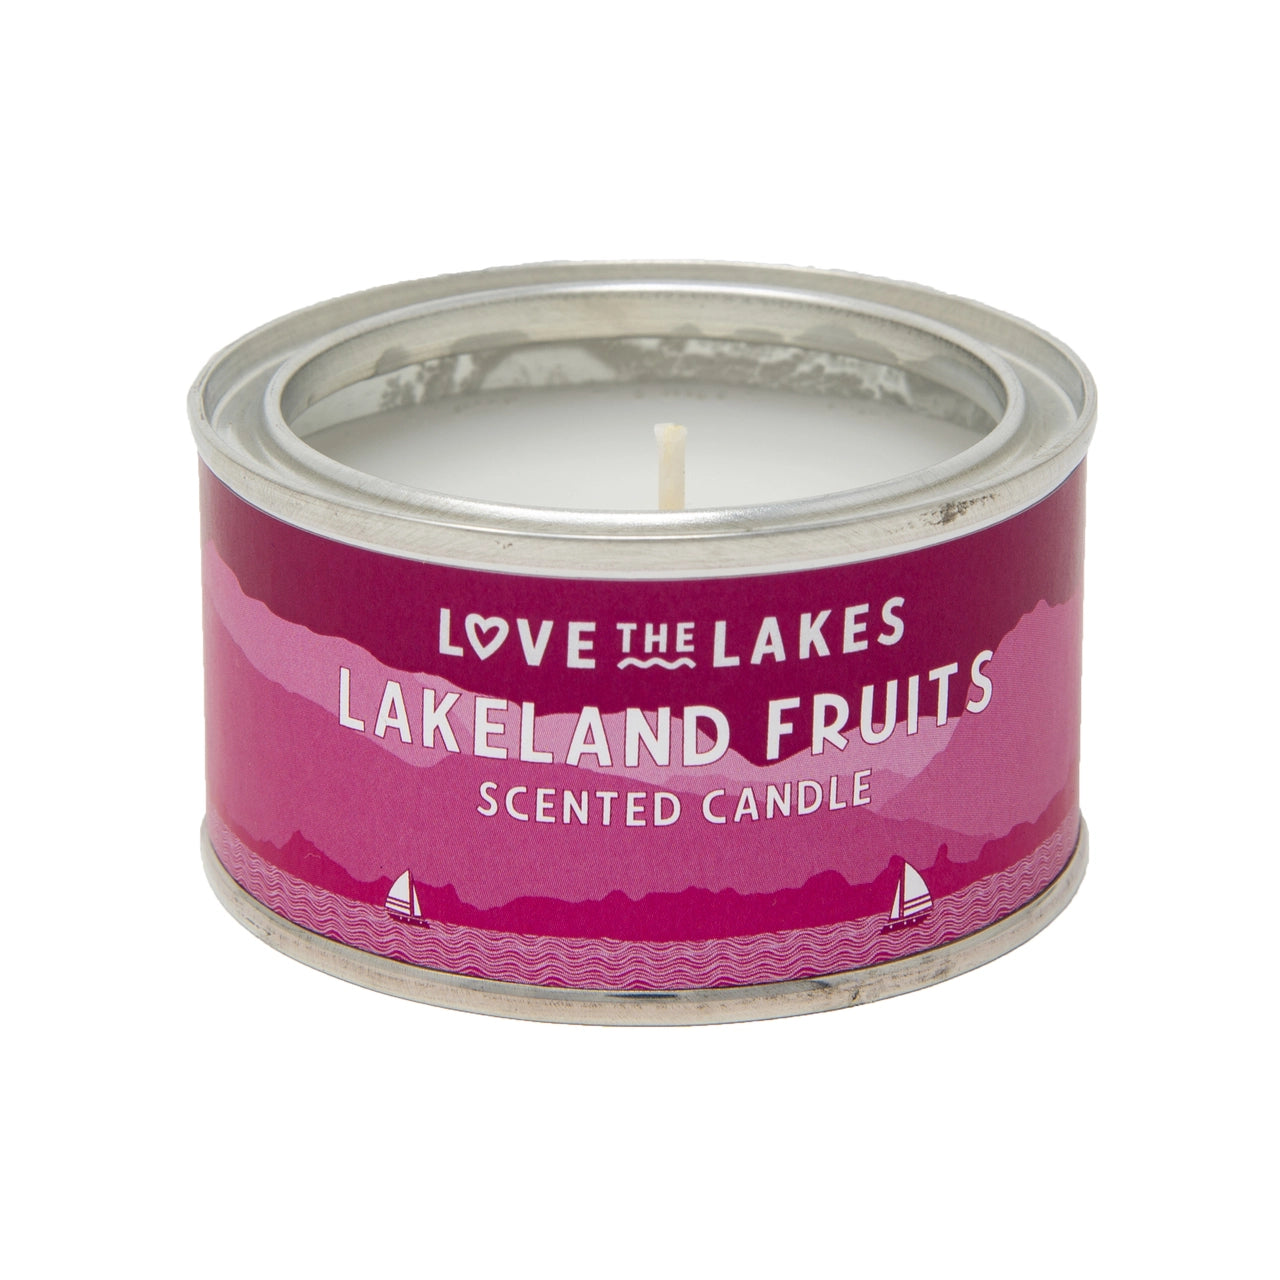 Love the Lakes Lakeland Fruits Candle - 3 sizes